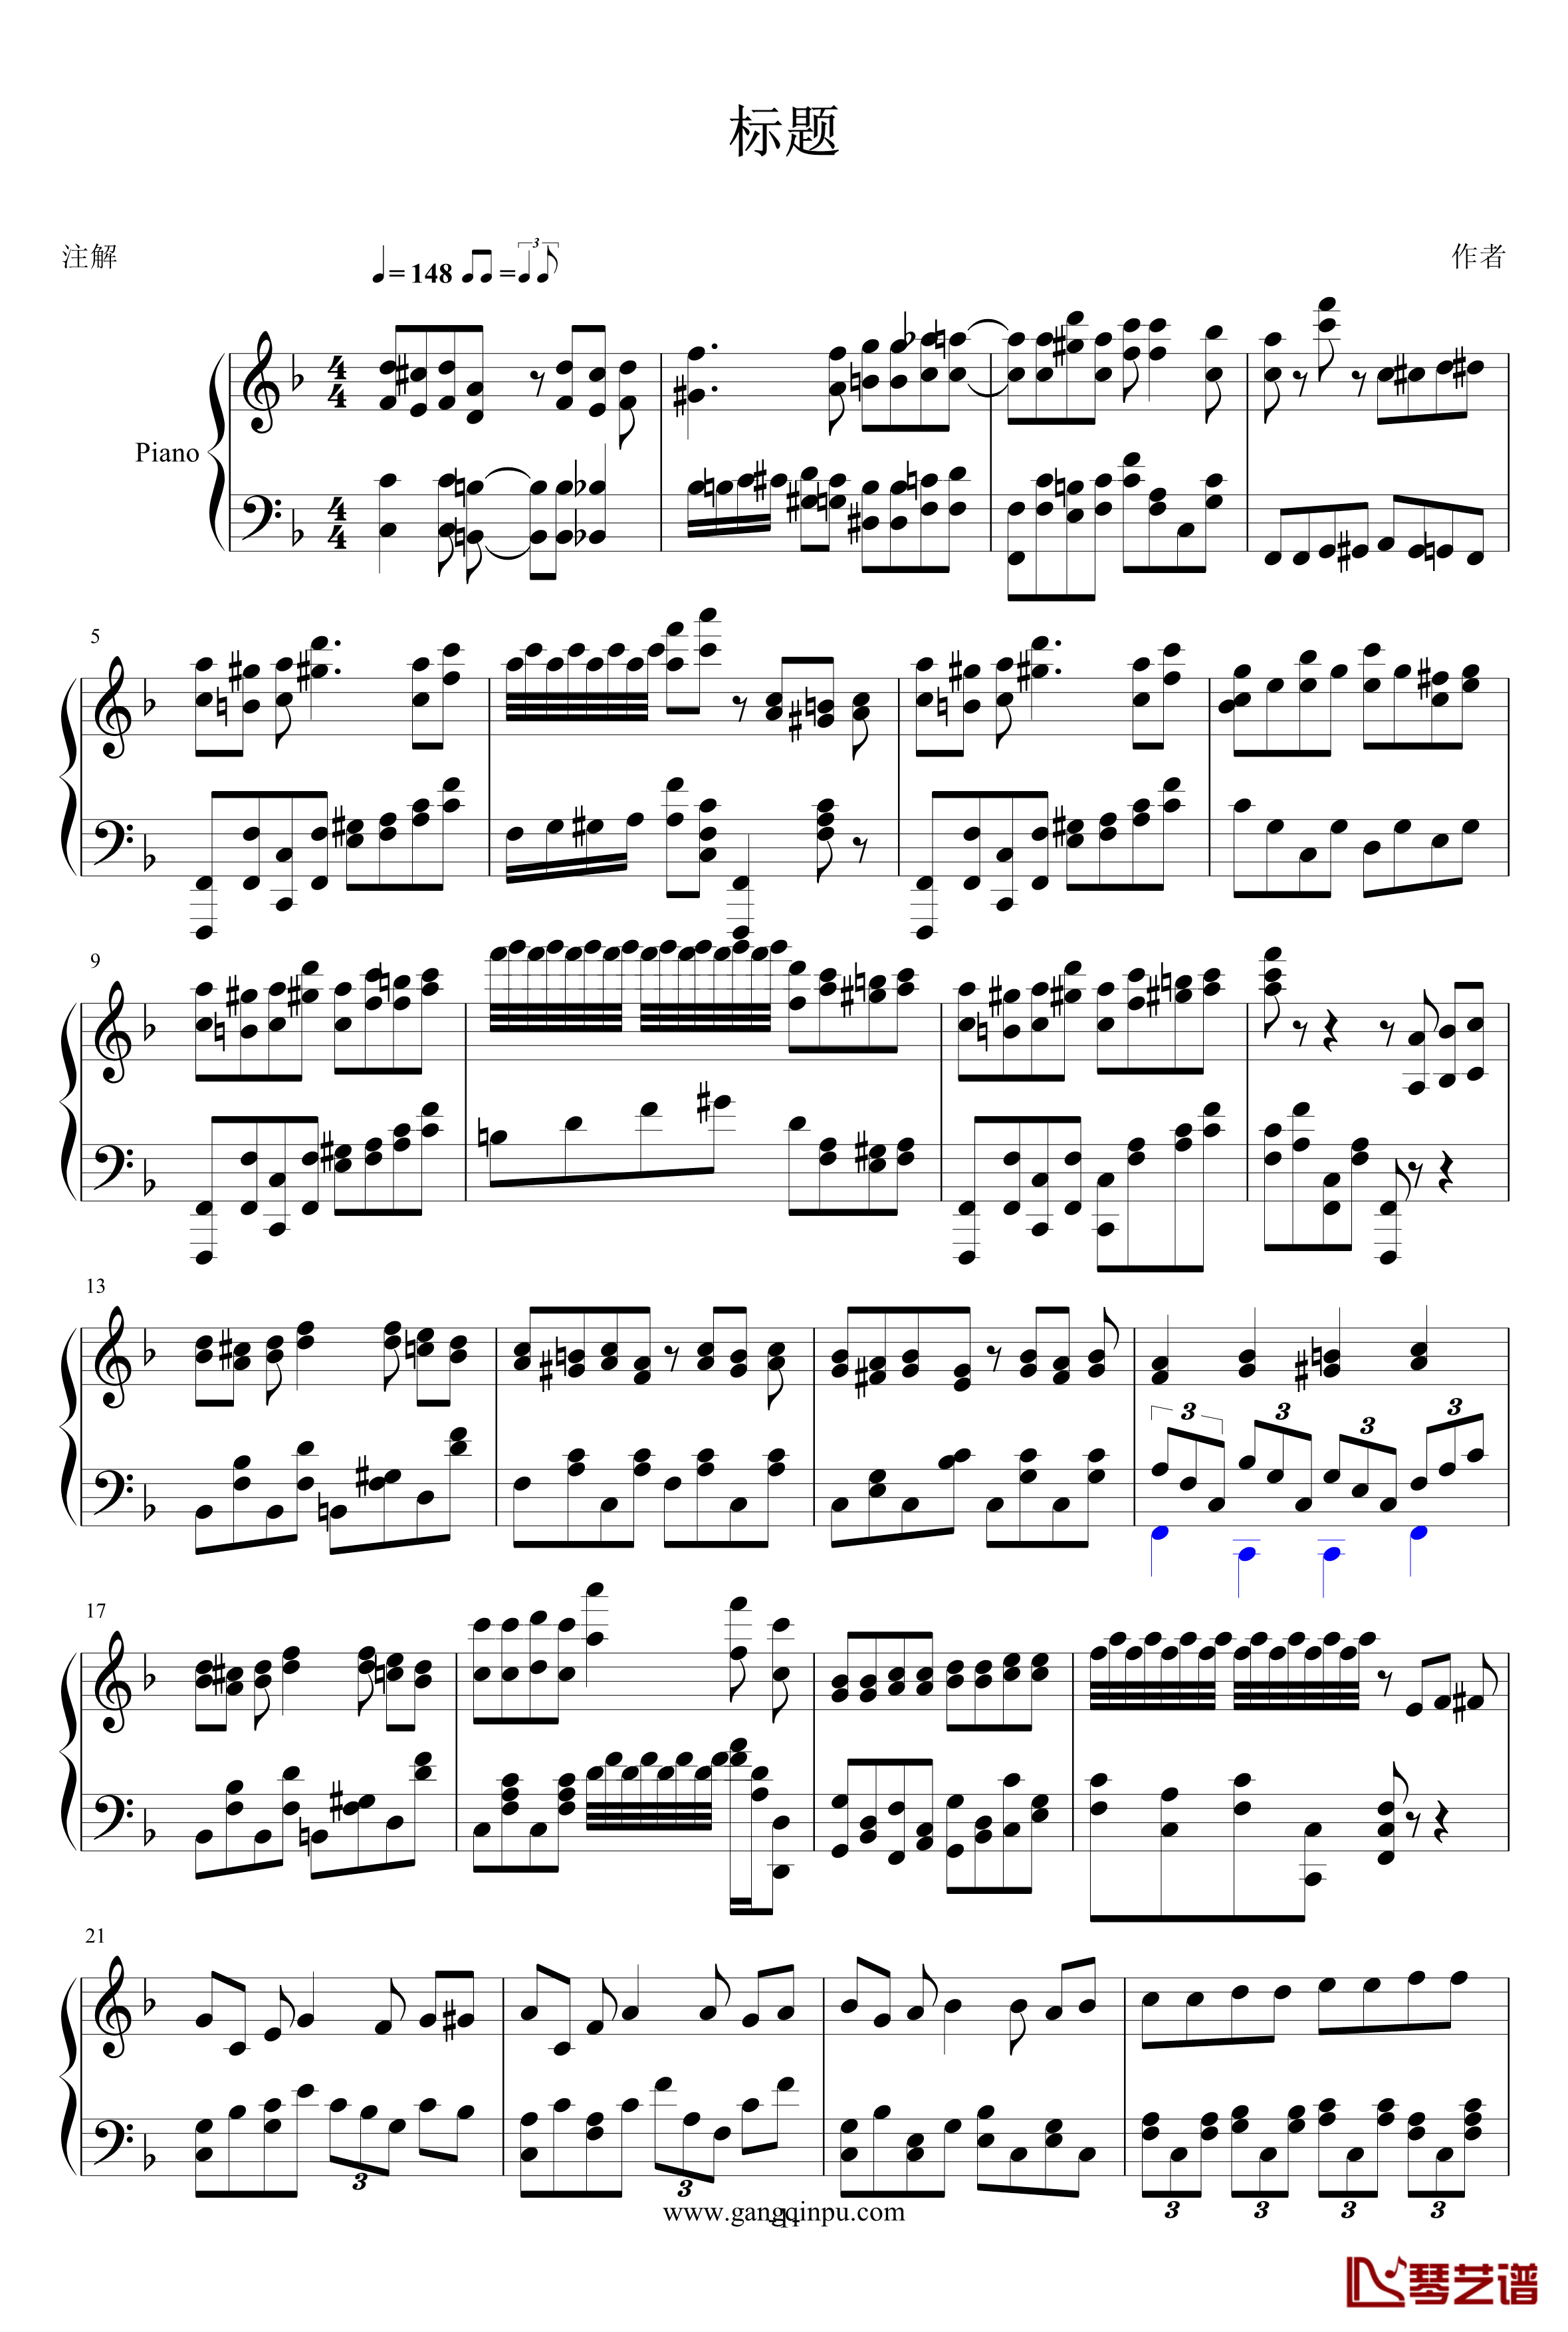 灵感系列之三钢琴谱-北平乐师1